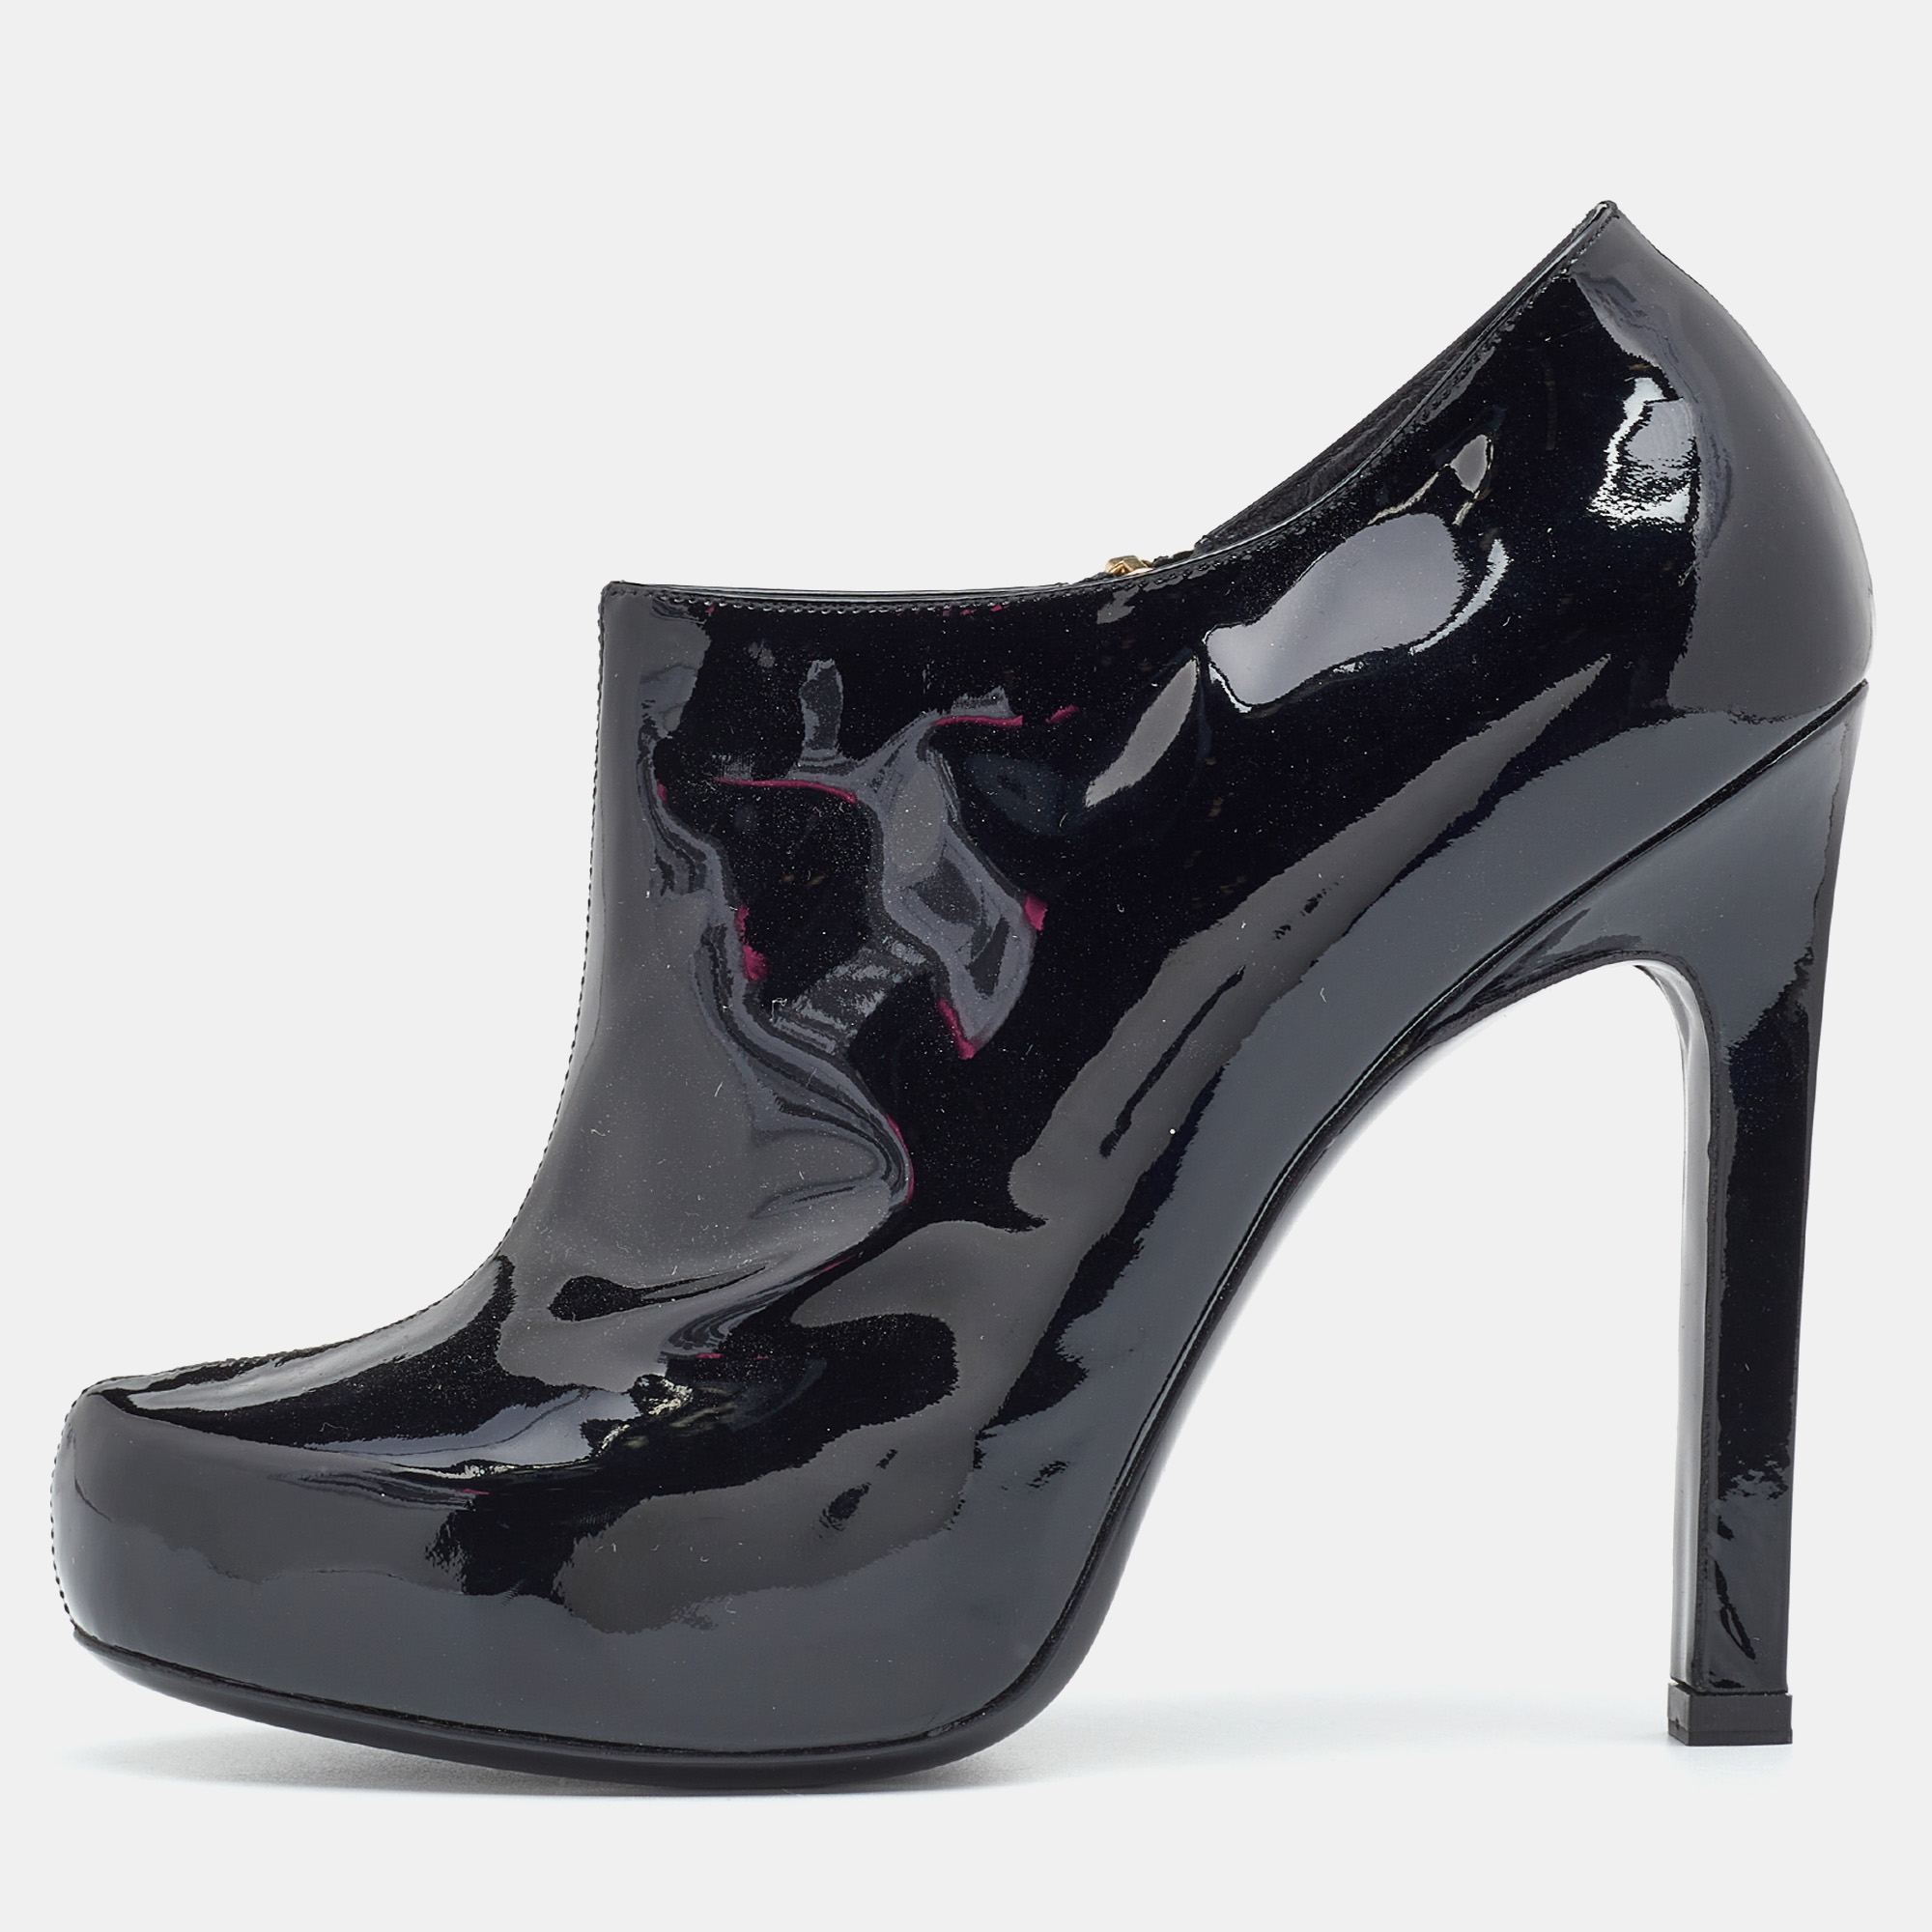 Yves saint laurent black patent leather platform booties size 38.5